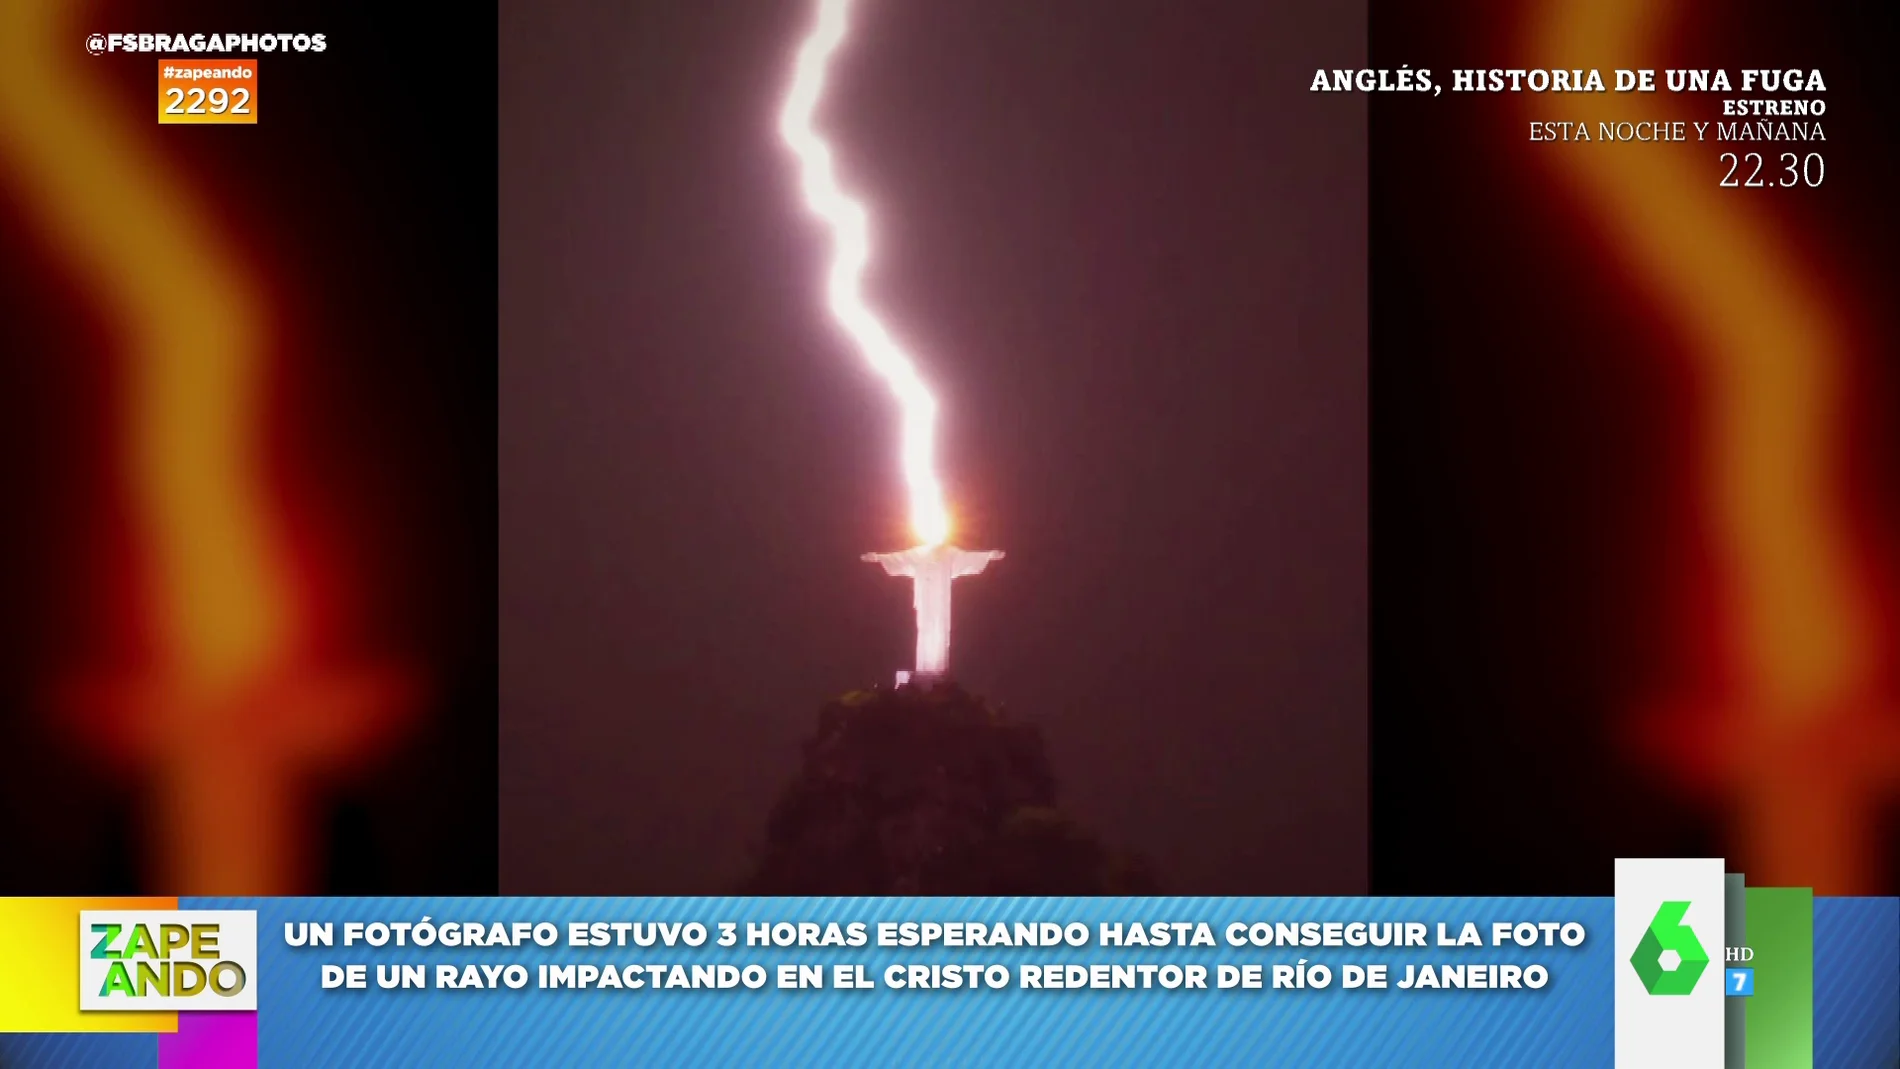 La impactante imagen de un rayo impactando contra el Cristo Redentor de Río de Janeiro